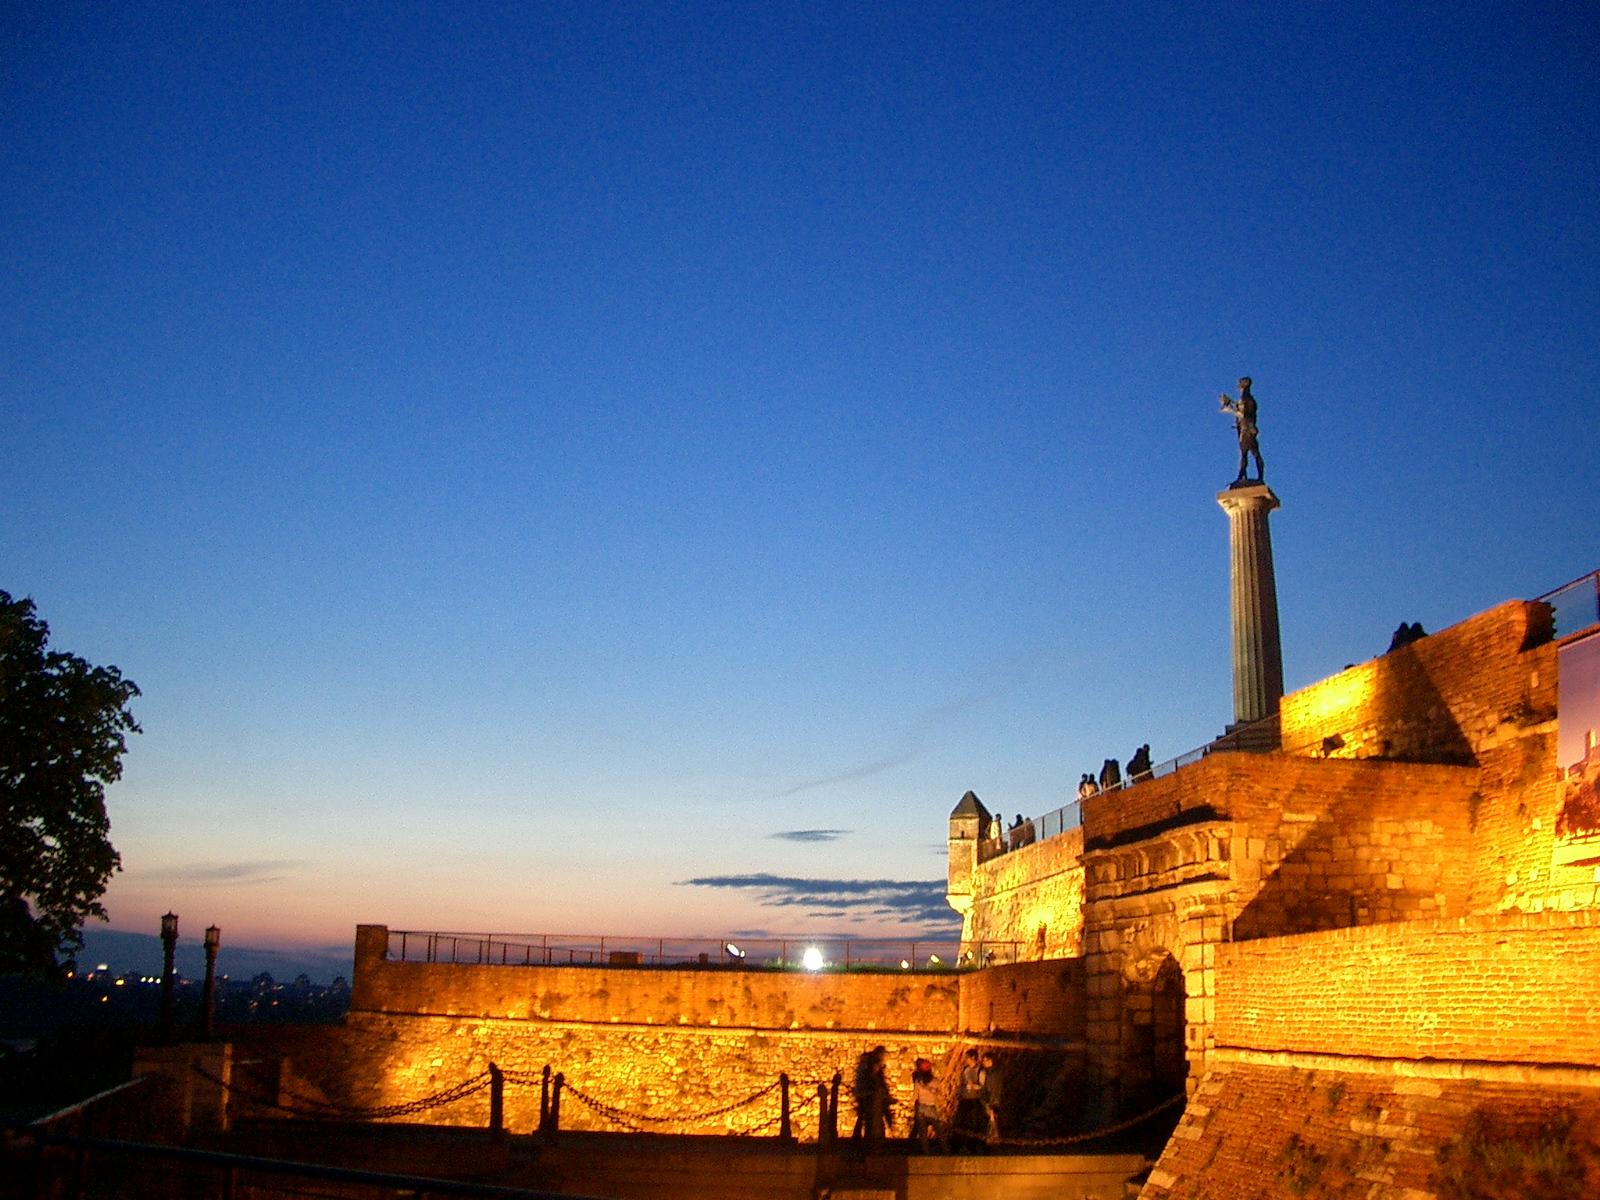 Belgrade Fortress: